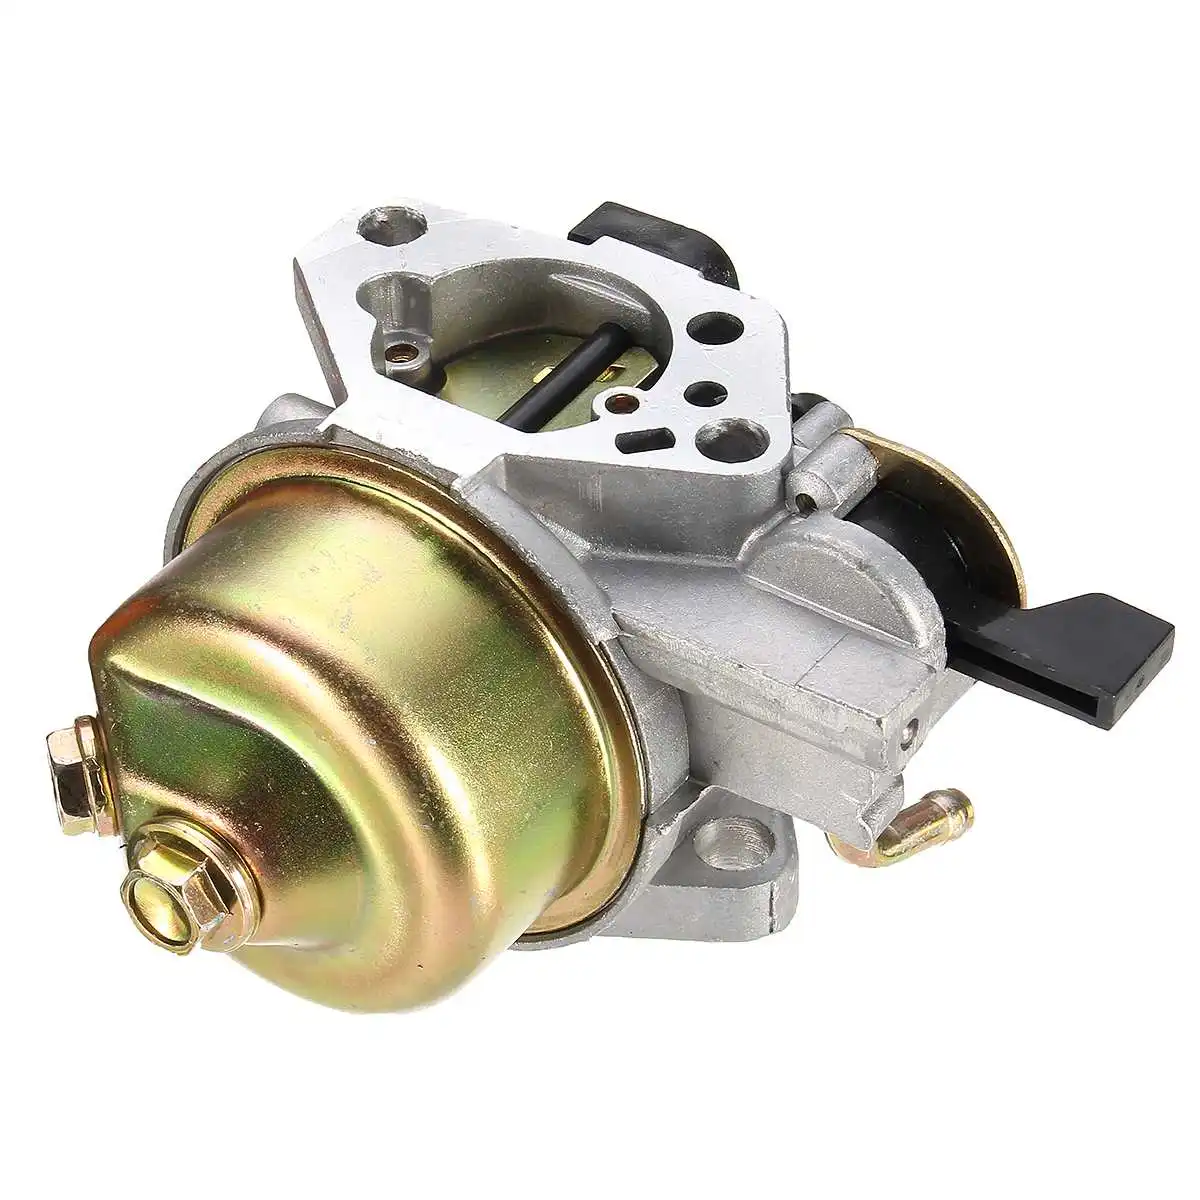 Карбюратор уплотнитель карбюратора топливный фильтр переключатель комплект для Honda GX390 13H P двигатели заменяет 16100-ZF6-V01 газовый двигатель генератор